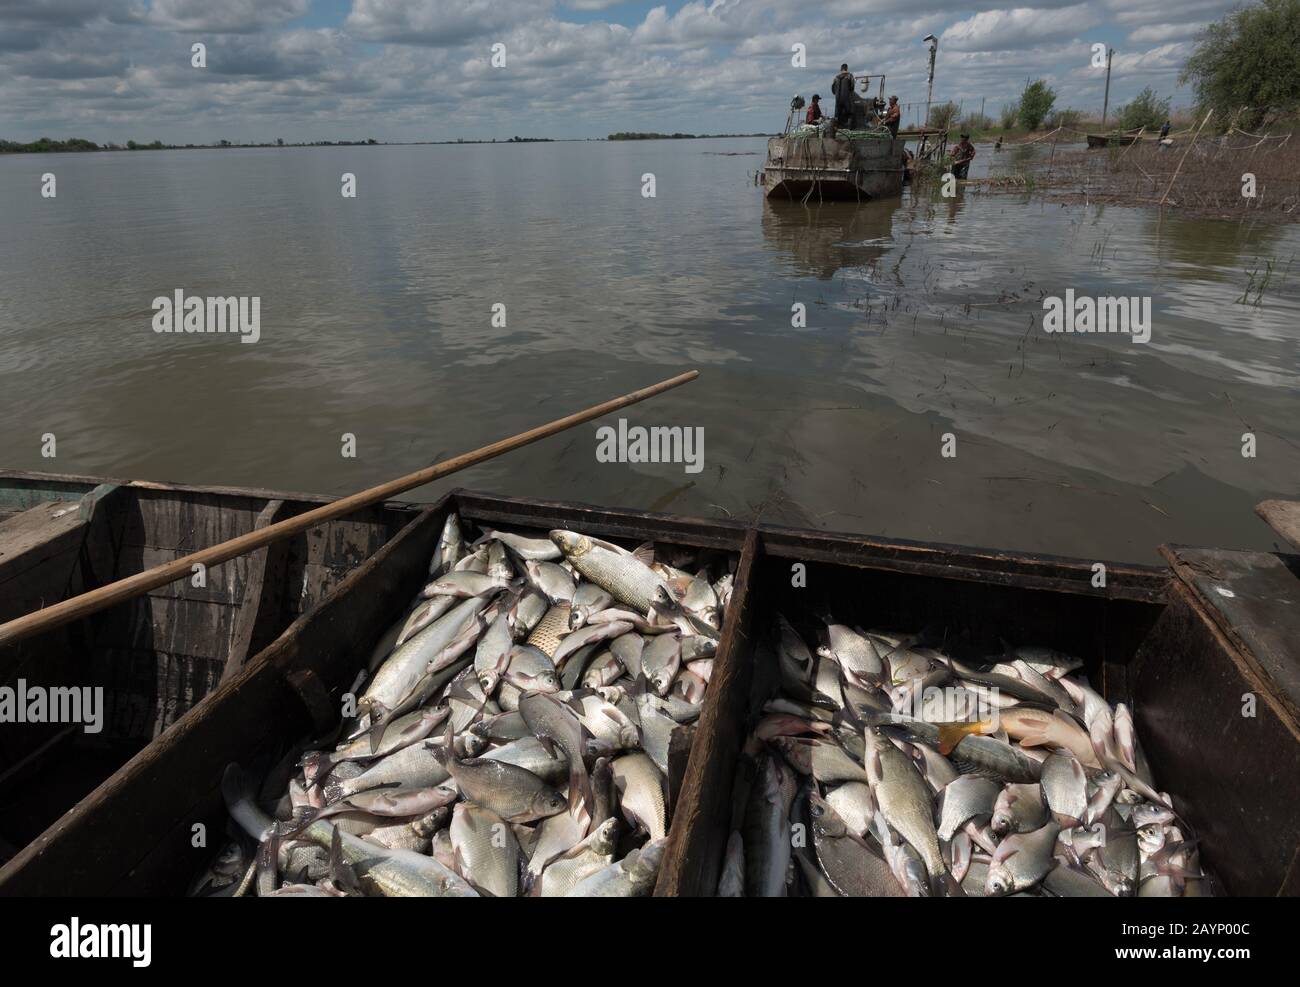 Какой промысел был распространен в районе астрахани. Волга река Астрахань рыбный промысел. Рыбный промысел в Астраханской области. Астрахань рыбный промысел 19 век. Астраханский рыбный промысел, Астрахань.